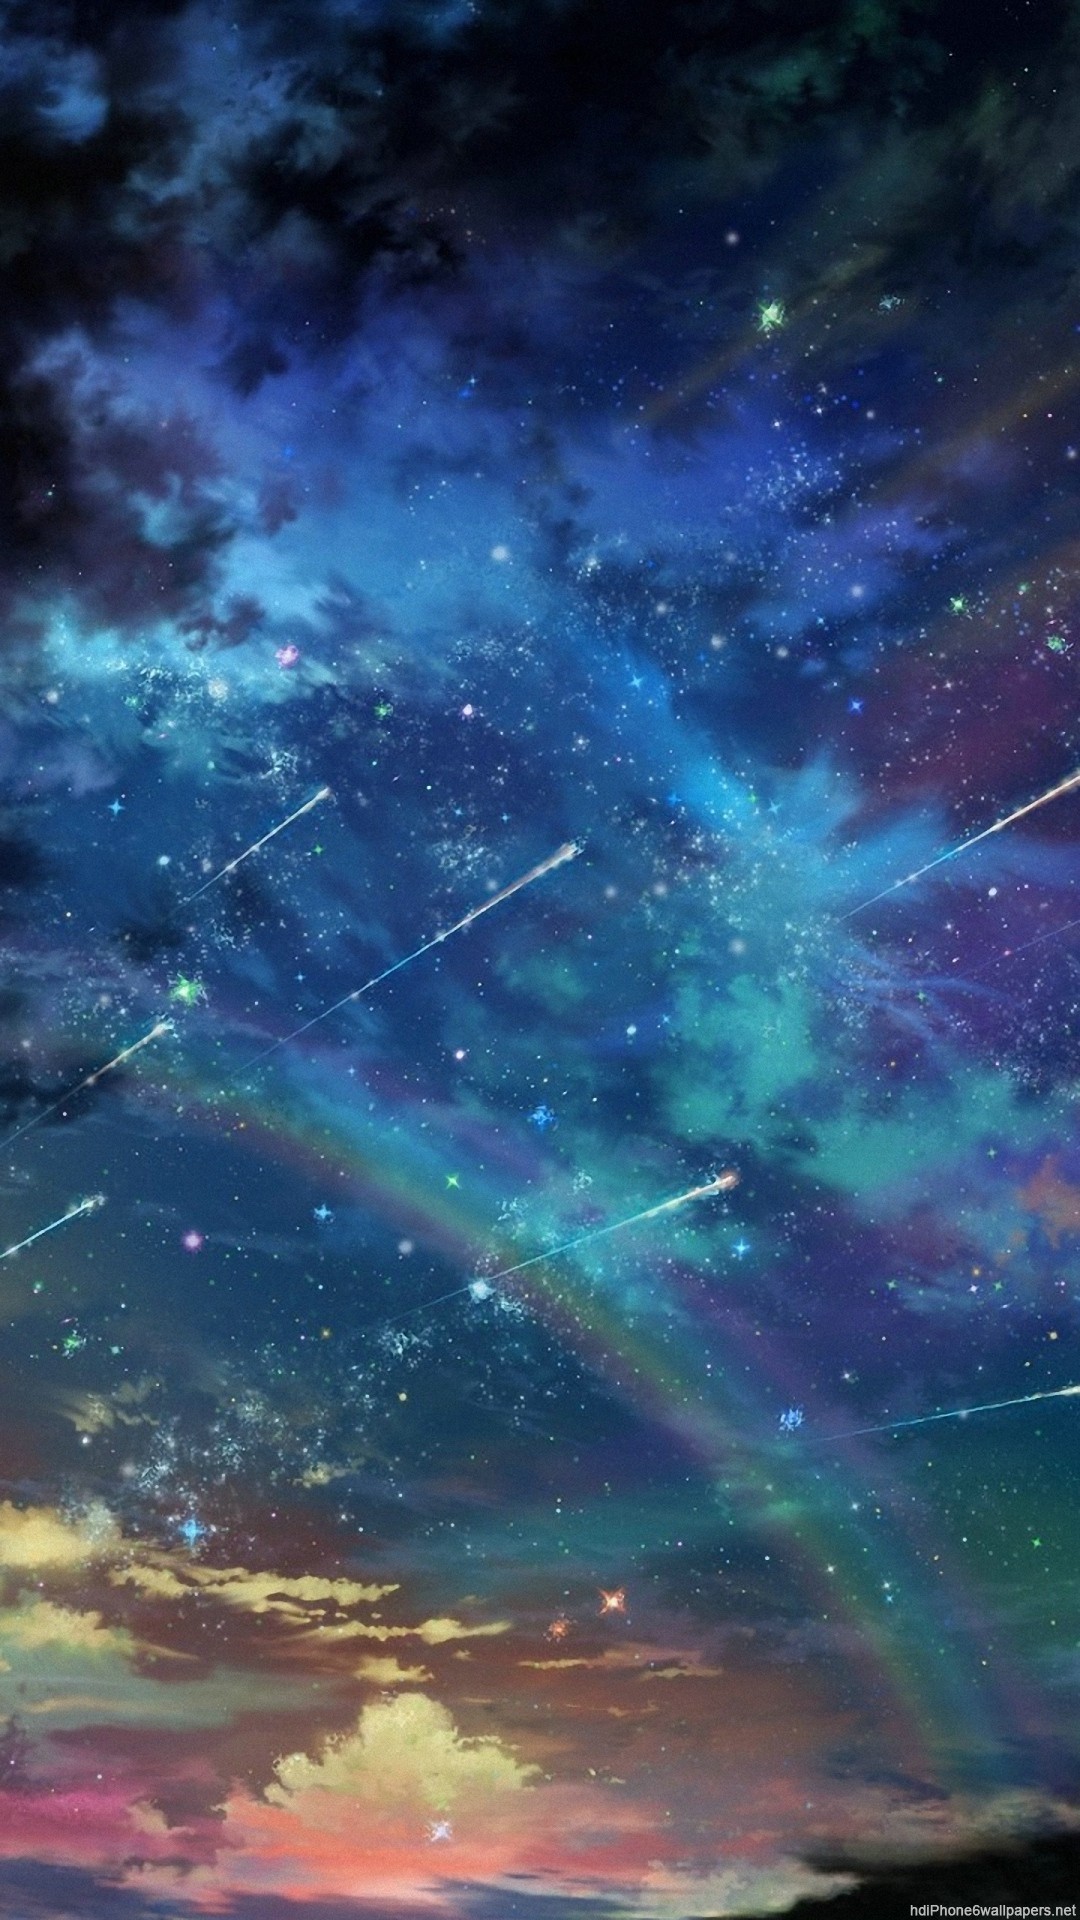 虹と流れ星の奇跡のコラボ宇宙の画像